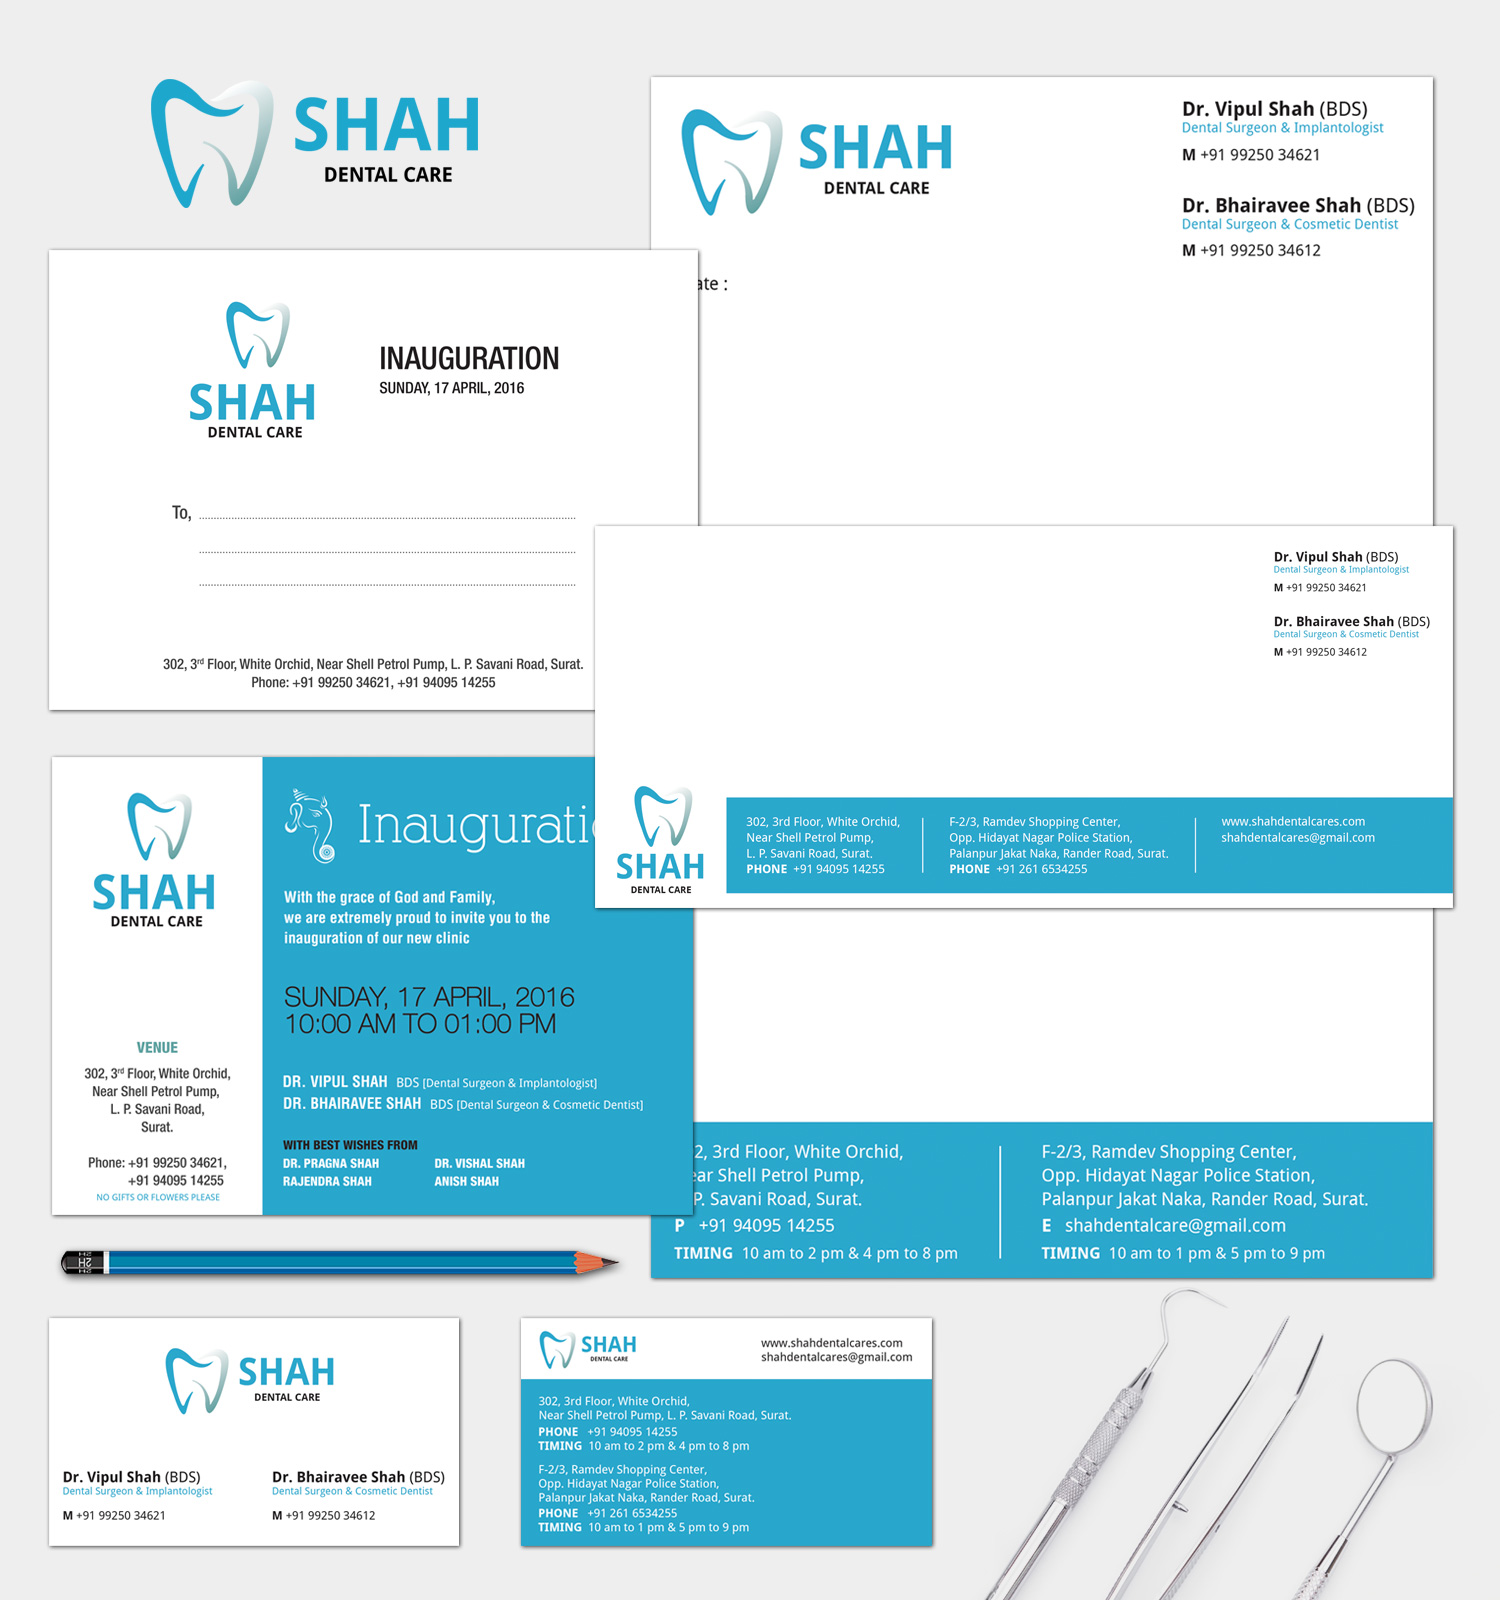 Shah Dental Care